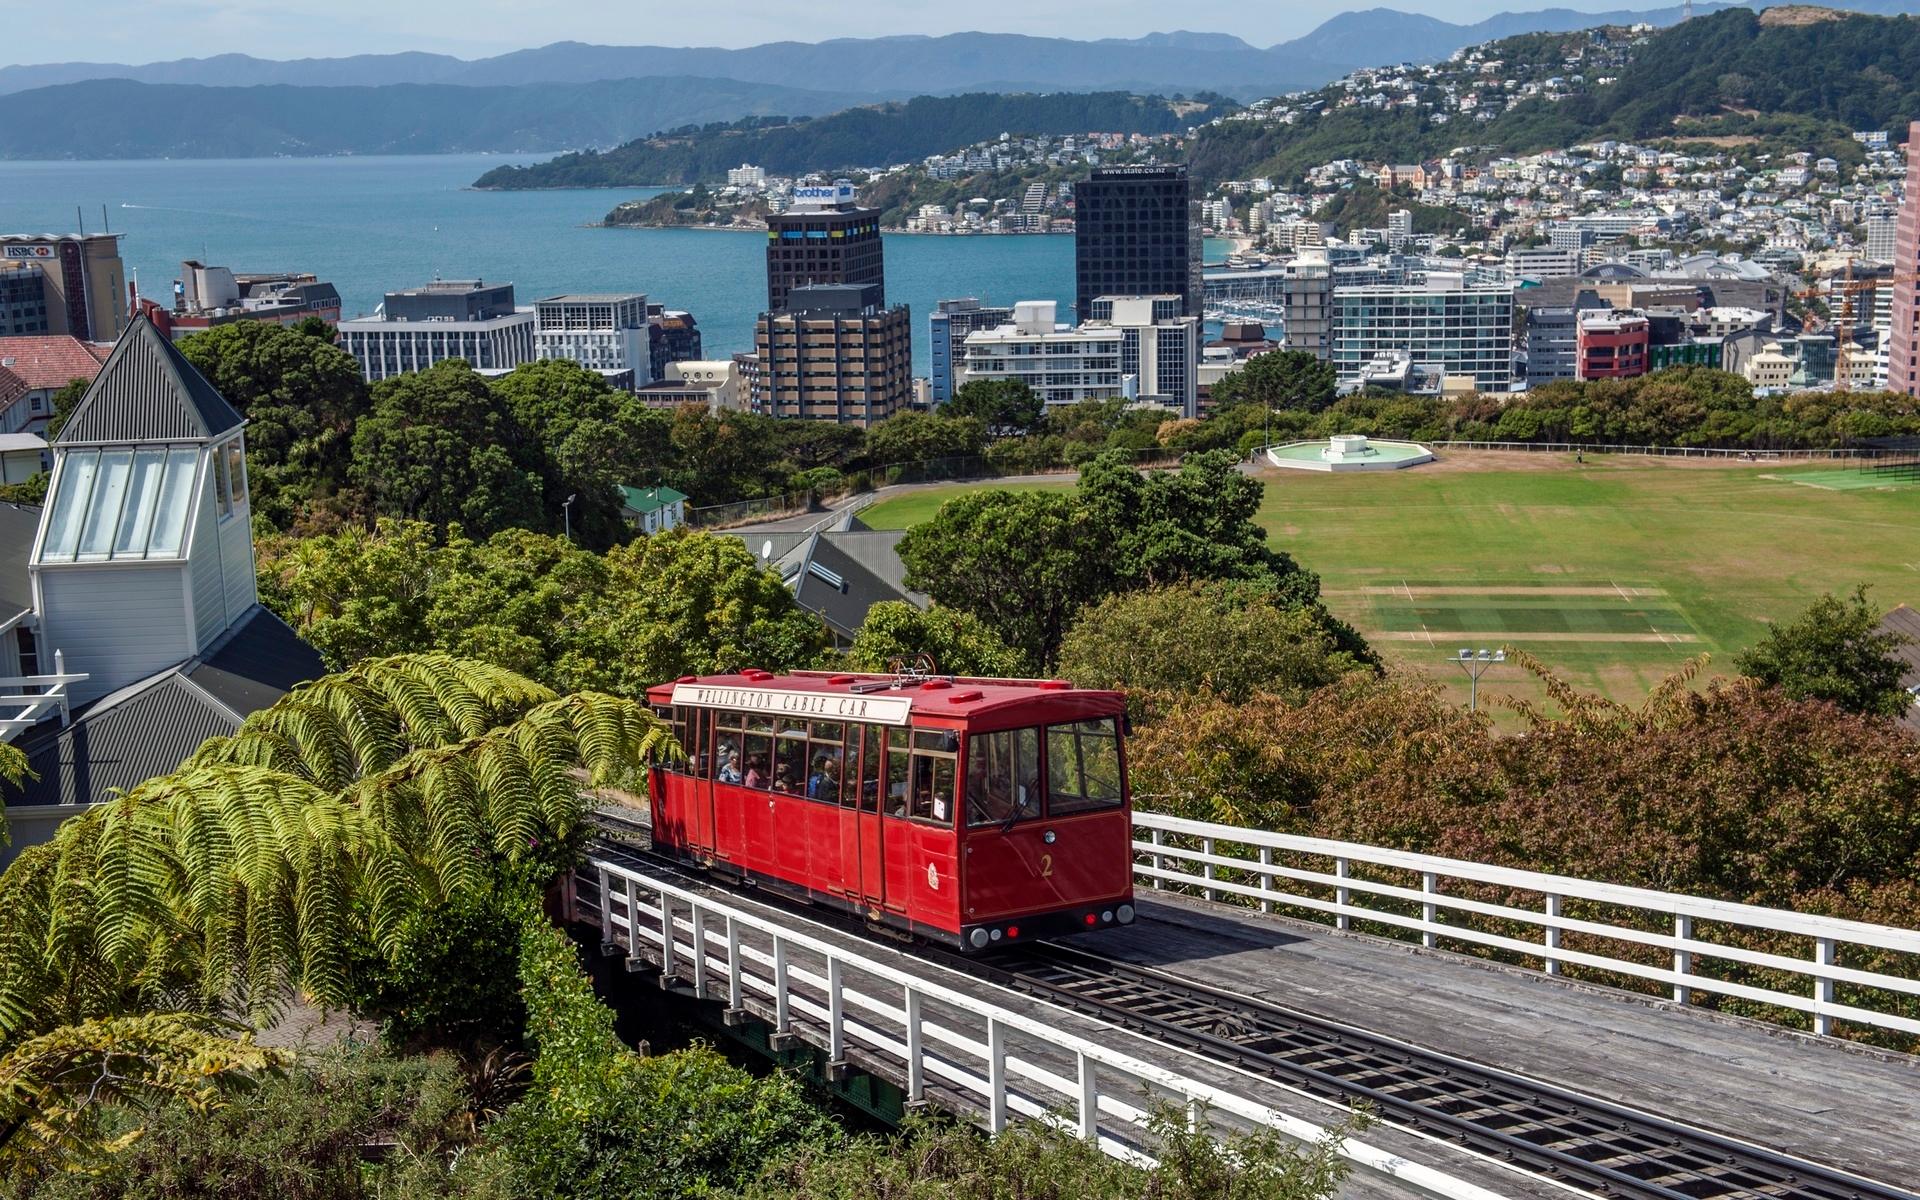 Nya Zeeland, Schweiz och Belgien tar en sjätteplats och får enligt Henley Passport Index 186 poäng. Bilden är från Nya Zeelands huvudstad Wellington.